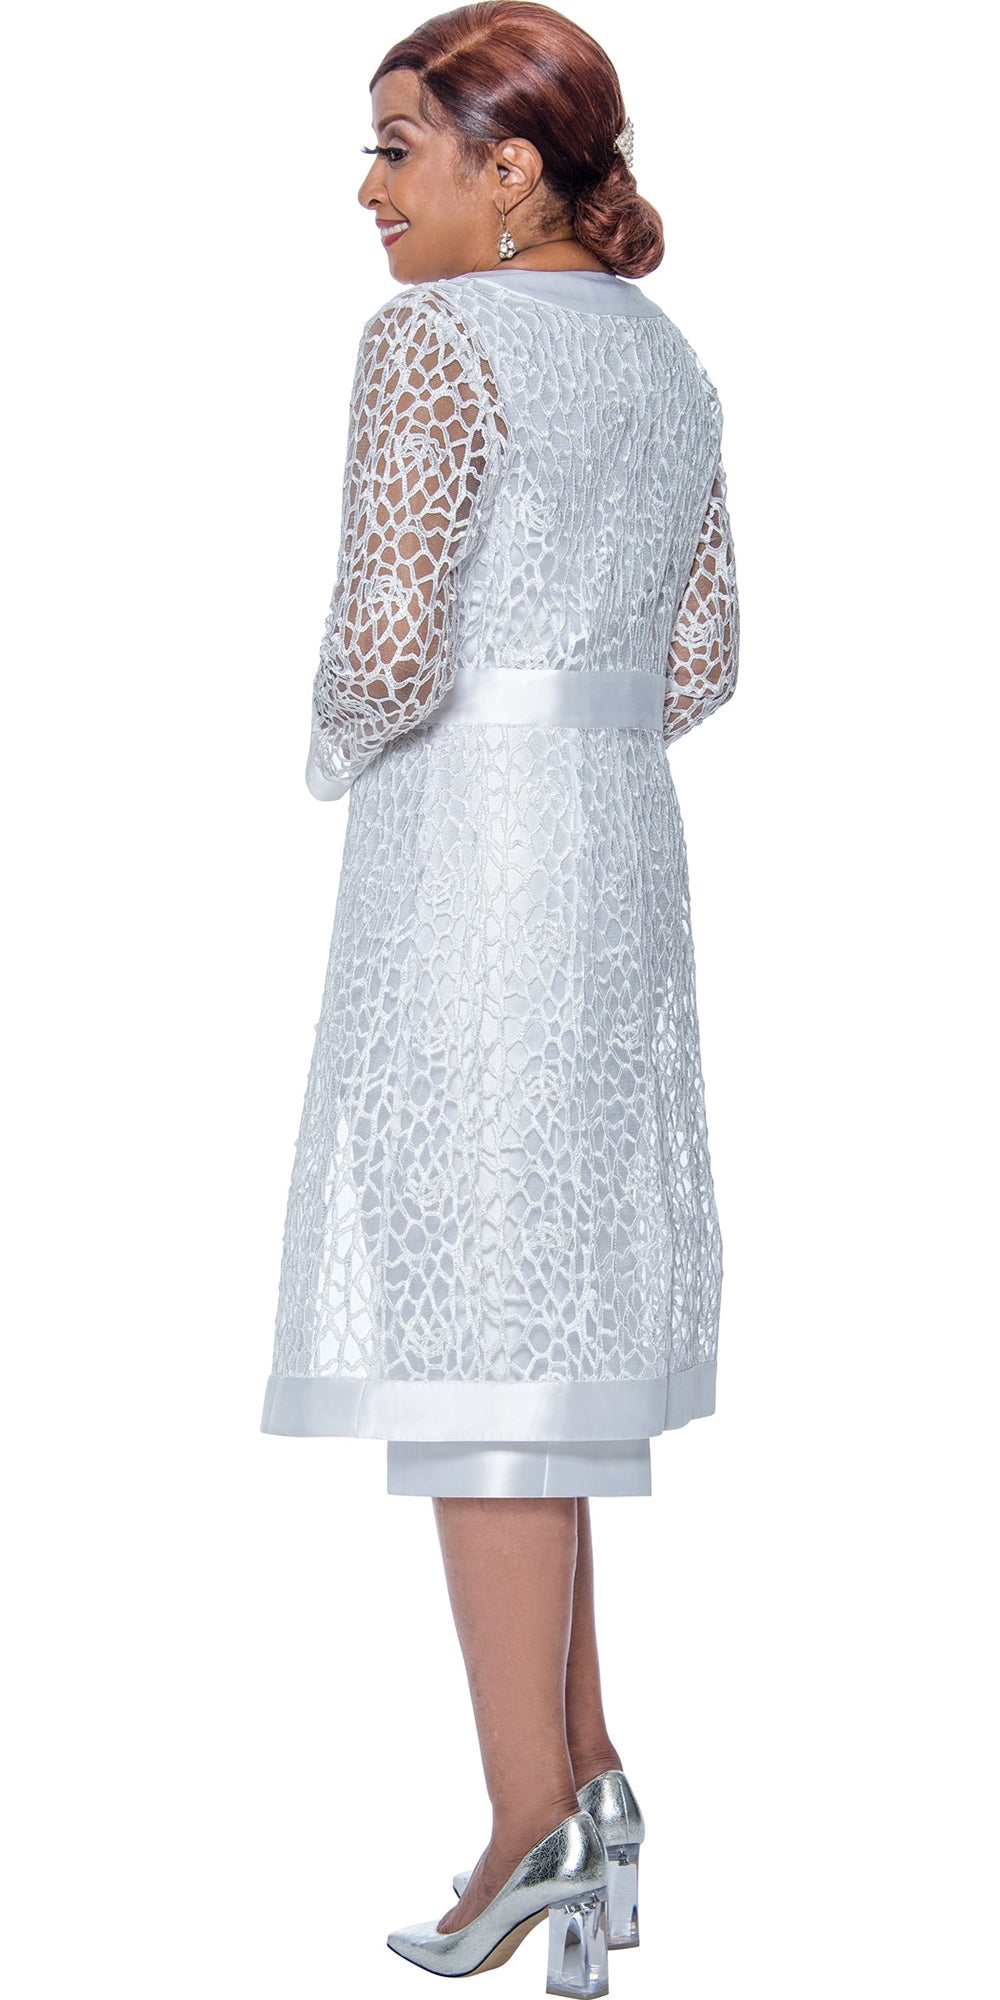 Dorinda Clark Cole - DCC4892 - White Lace 2pc Jacket Dress